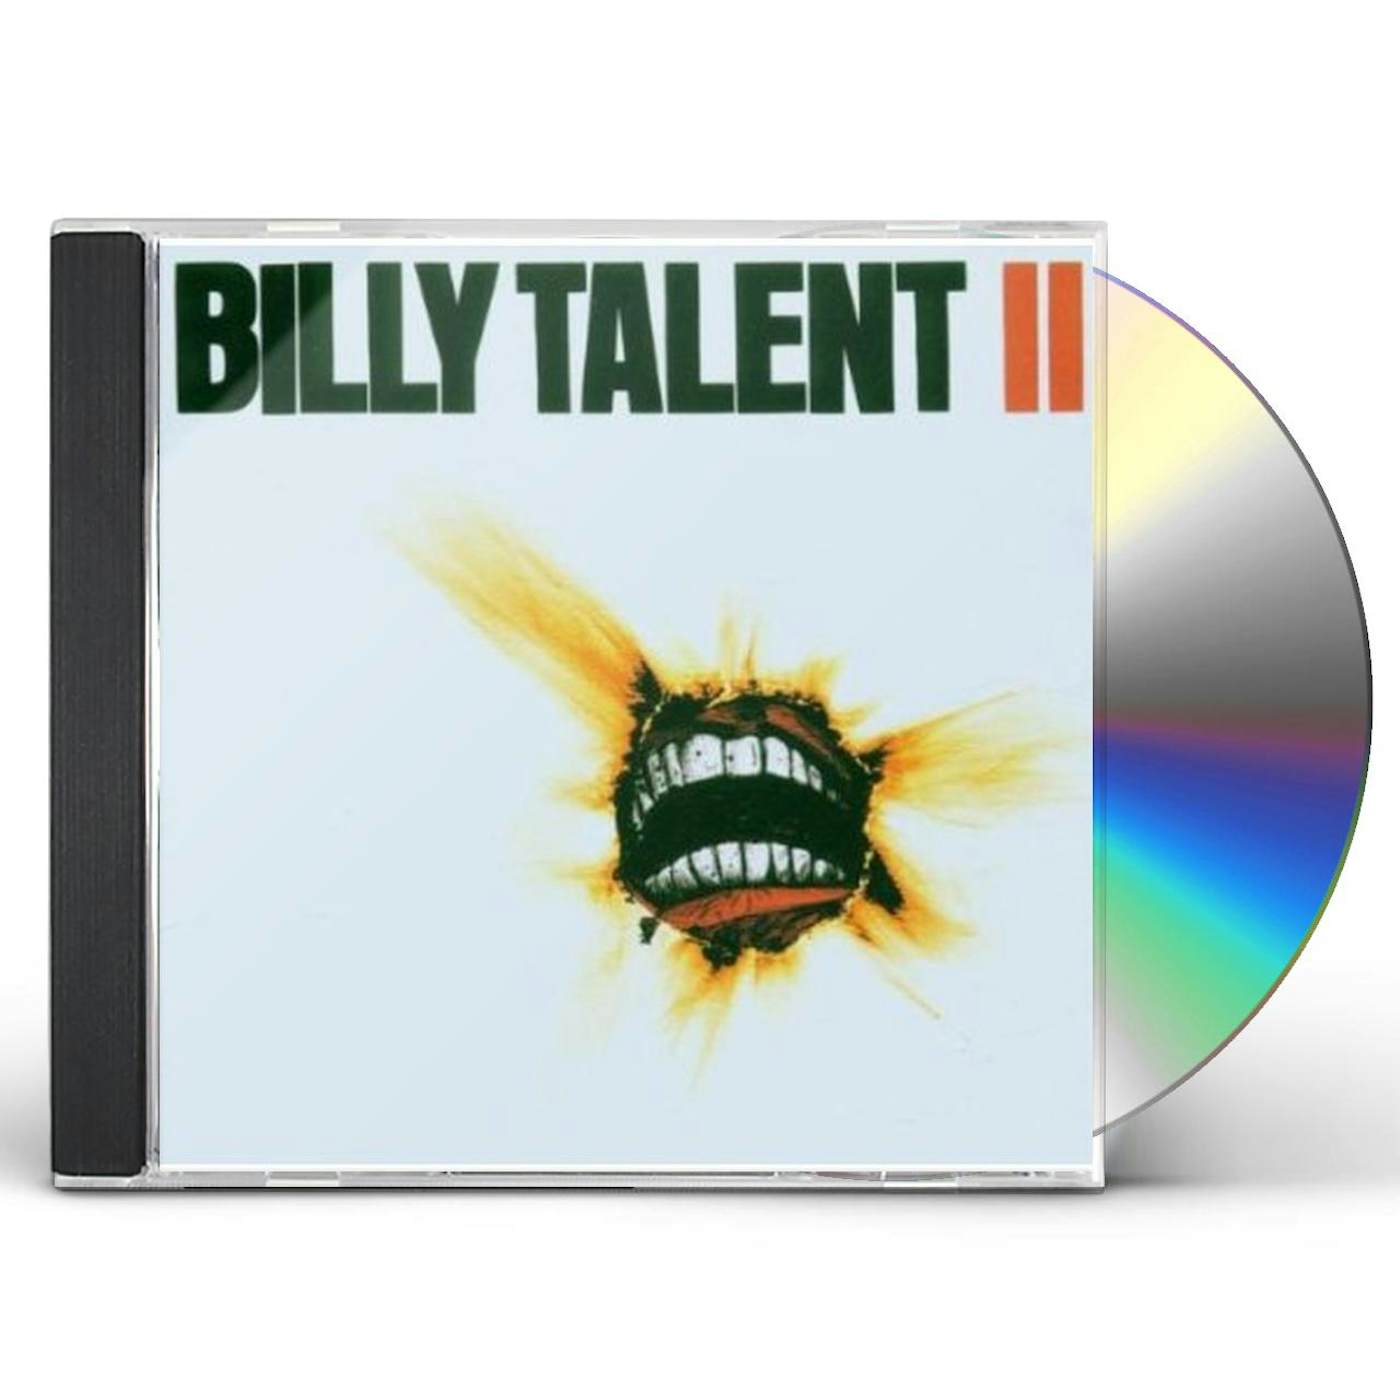 Billy Talent II CD